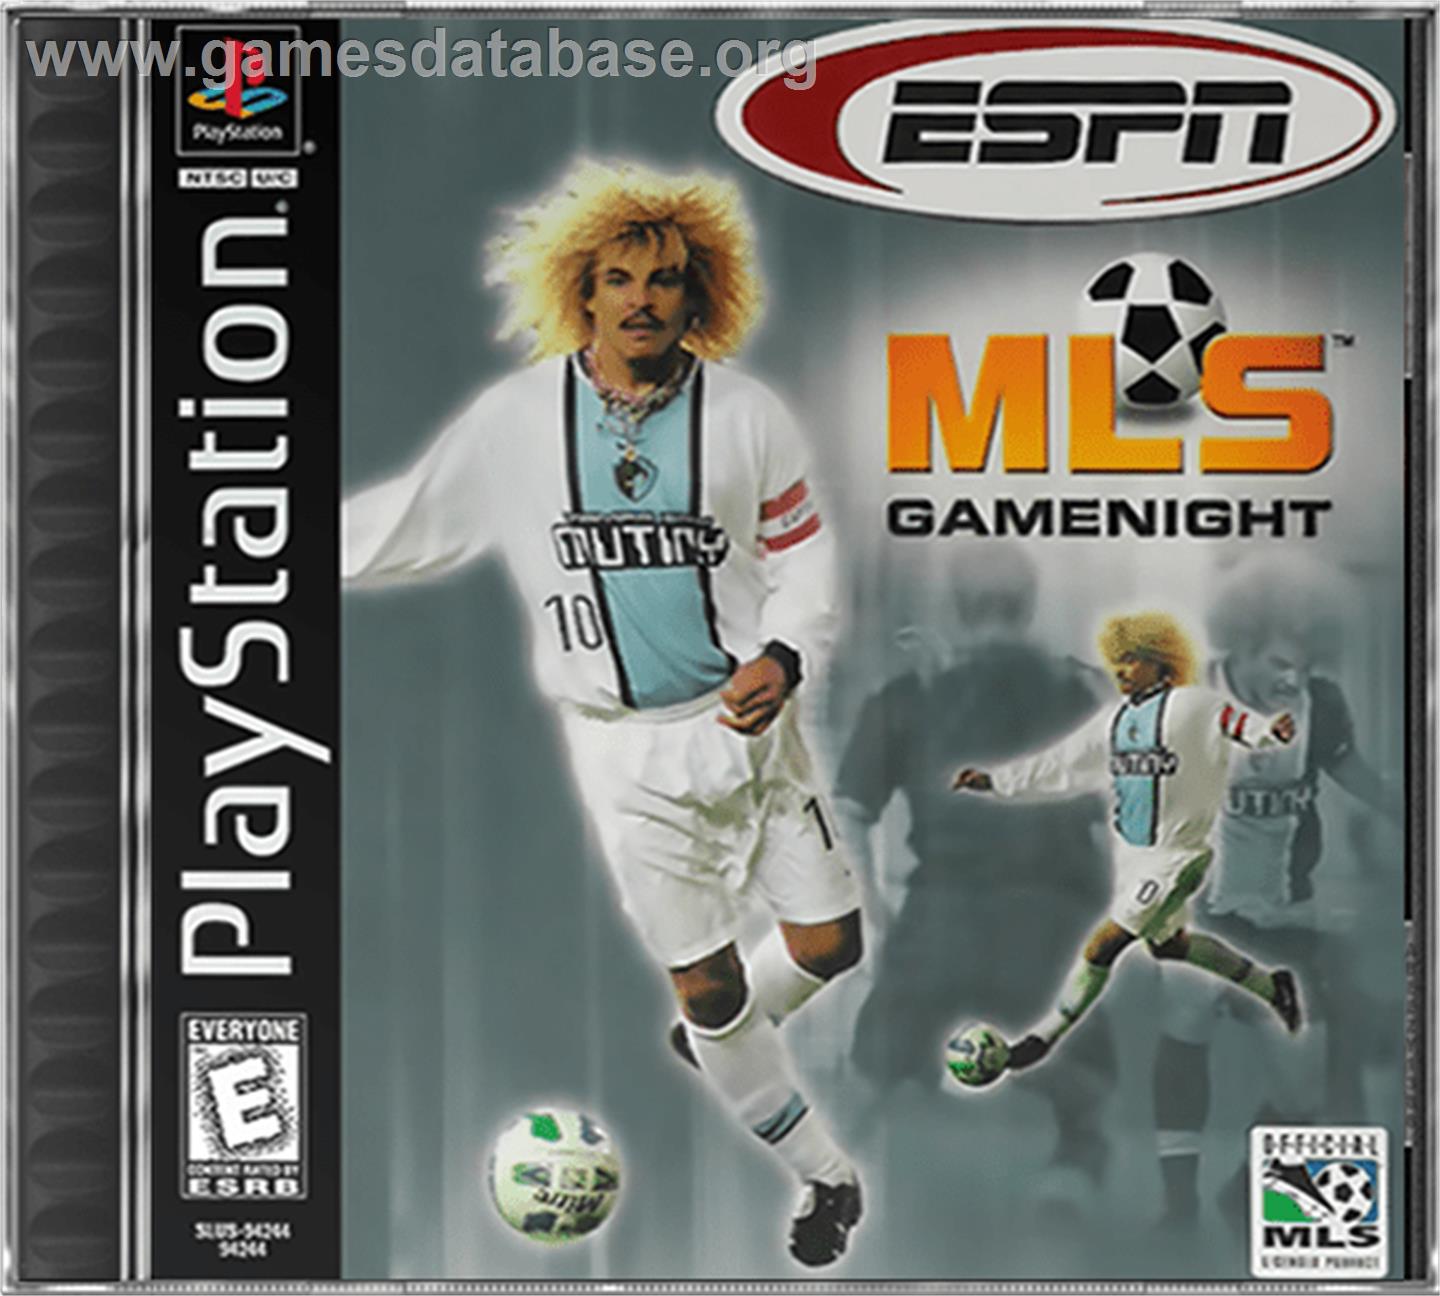 ESPN MLS GameNight - Sony Playstation - Artwork - Box